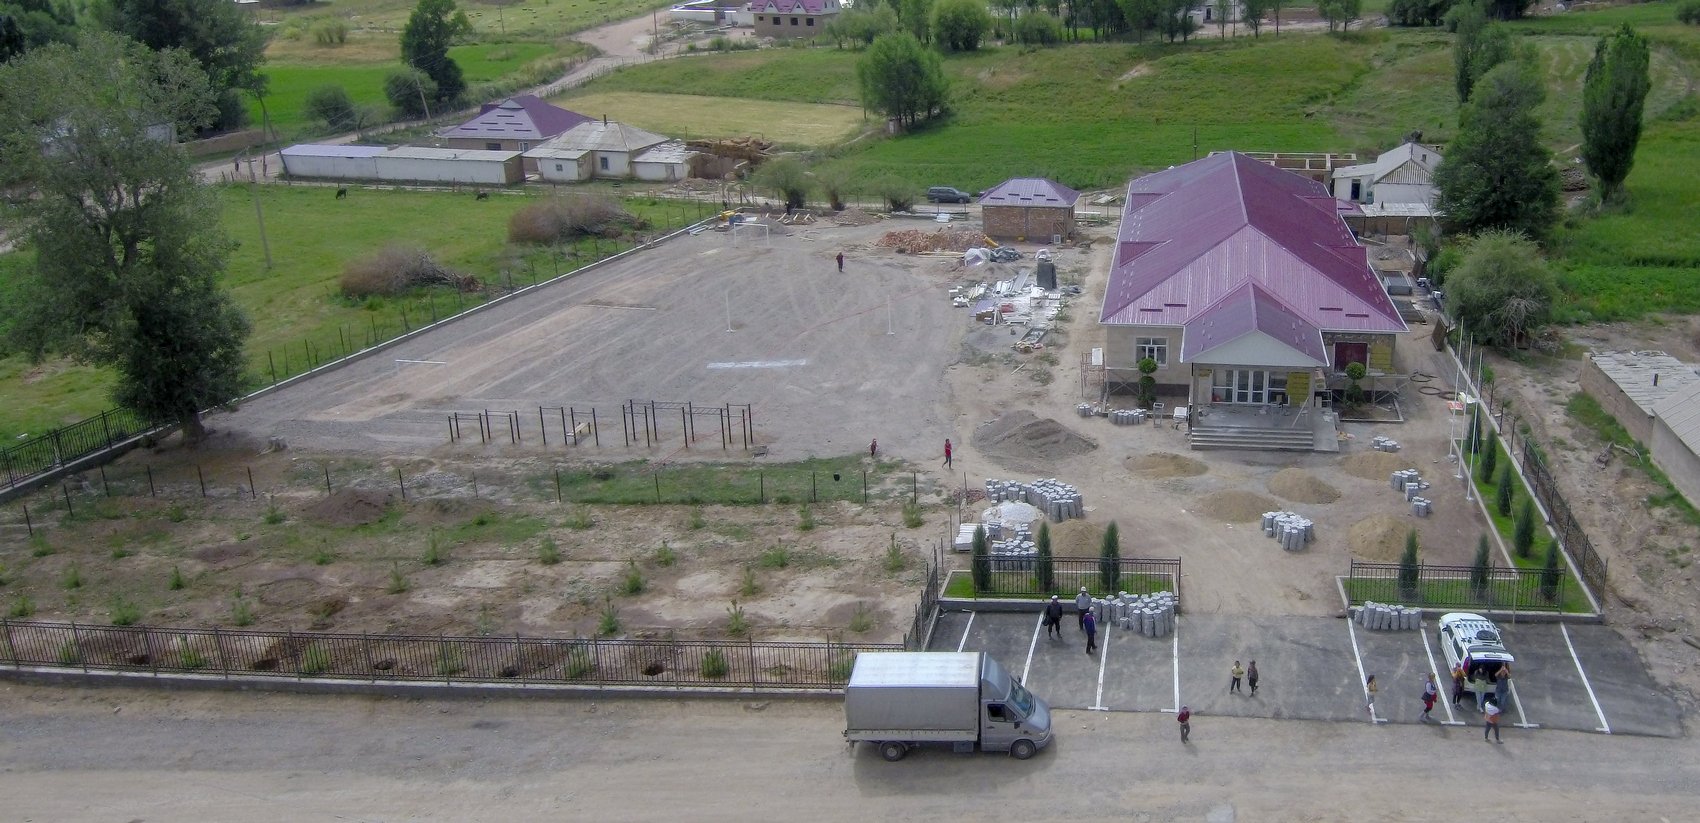 Одна из самых современных школ по оснащению открывается в Нарынской области Кыргызстана!